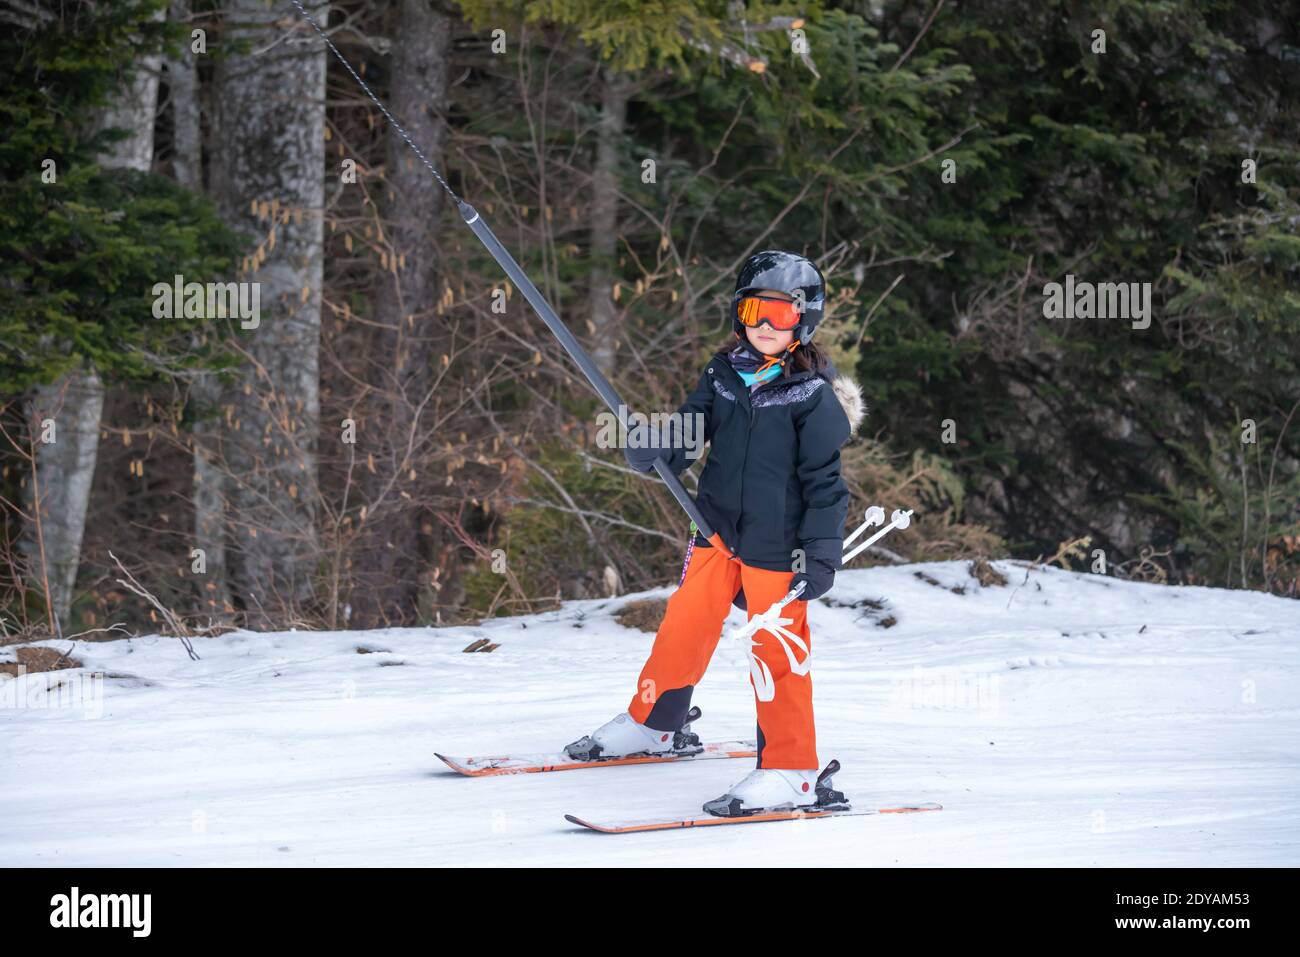 Skifahren im Schnee. Ein asiatisches Mädchen, das auf dem Skilift sitzt, indem es das Seil ergreifet und Skistöcke hält. Urlaub in der Schweiz. Glückliche Kindheit, Stockfoto